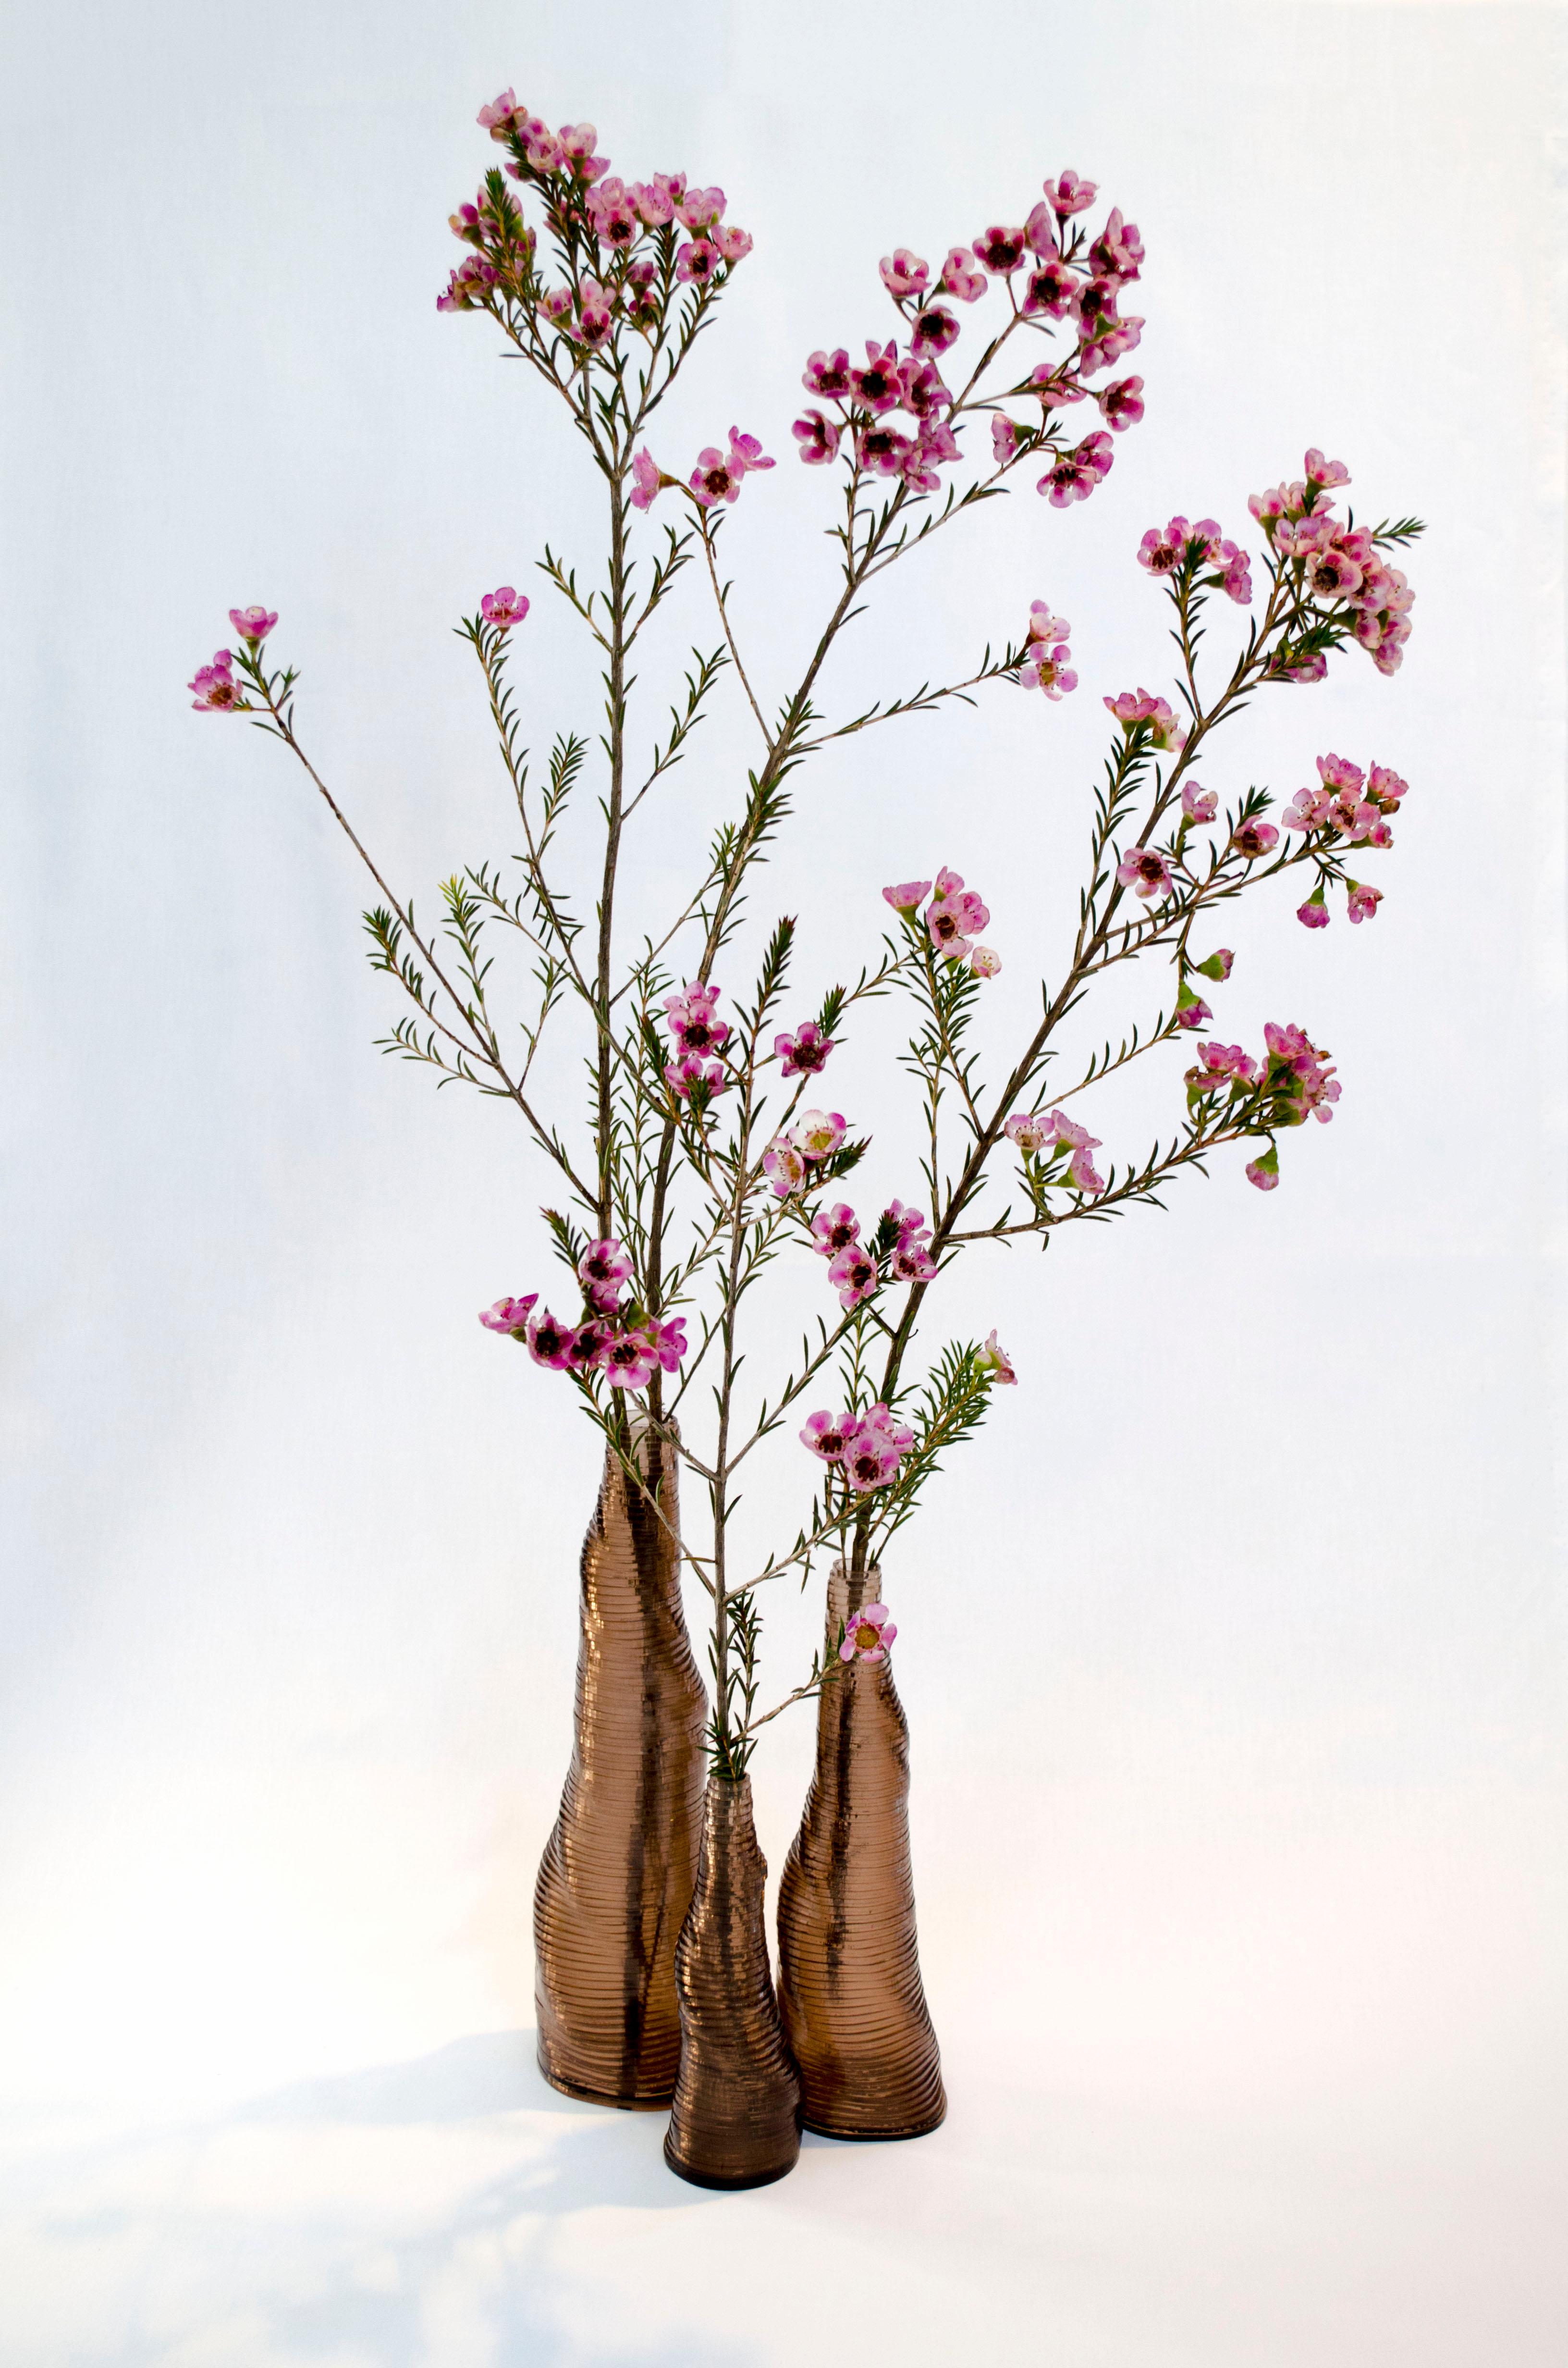 3er Set handgefertigter Stratum Tempus Vasen aus rauchbraunem Acryl von Daan De Wit
Nummerierte Ausgabe
Abmessungen: D 7,5 x H 26 cm, D 6,5 x H 21 cm, D 5 x H 15 cm.
MATERIALIEN: Acryl.
Auch in anderen Farben erhältlich.

Inspiriert von Blumen,